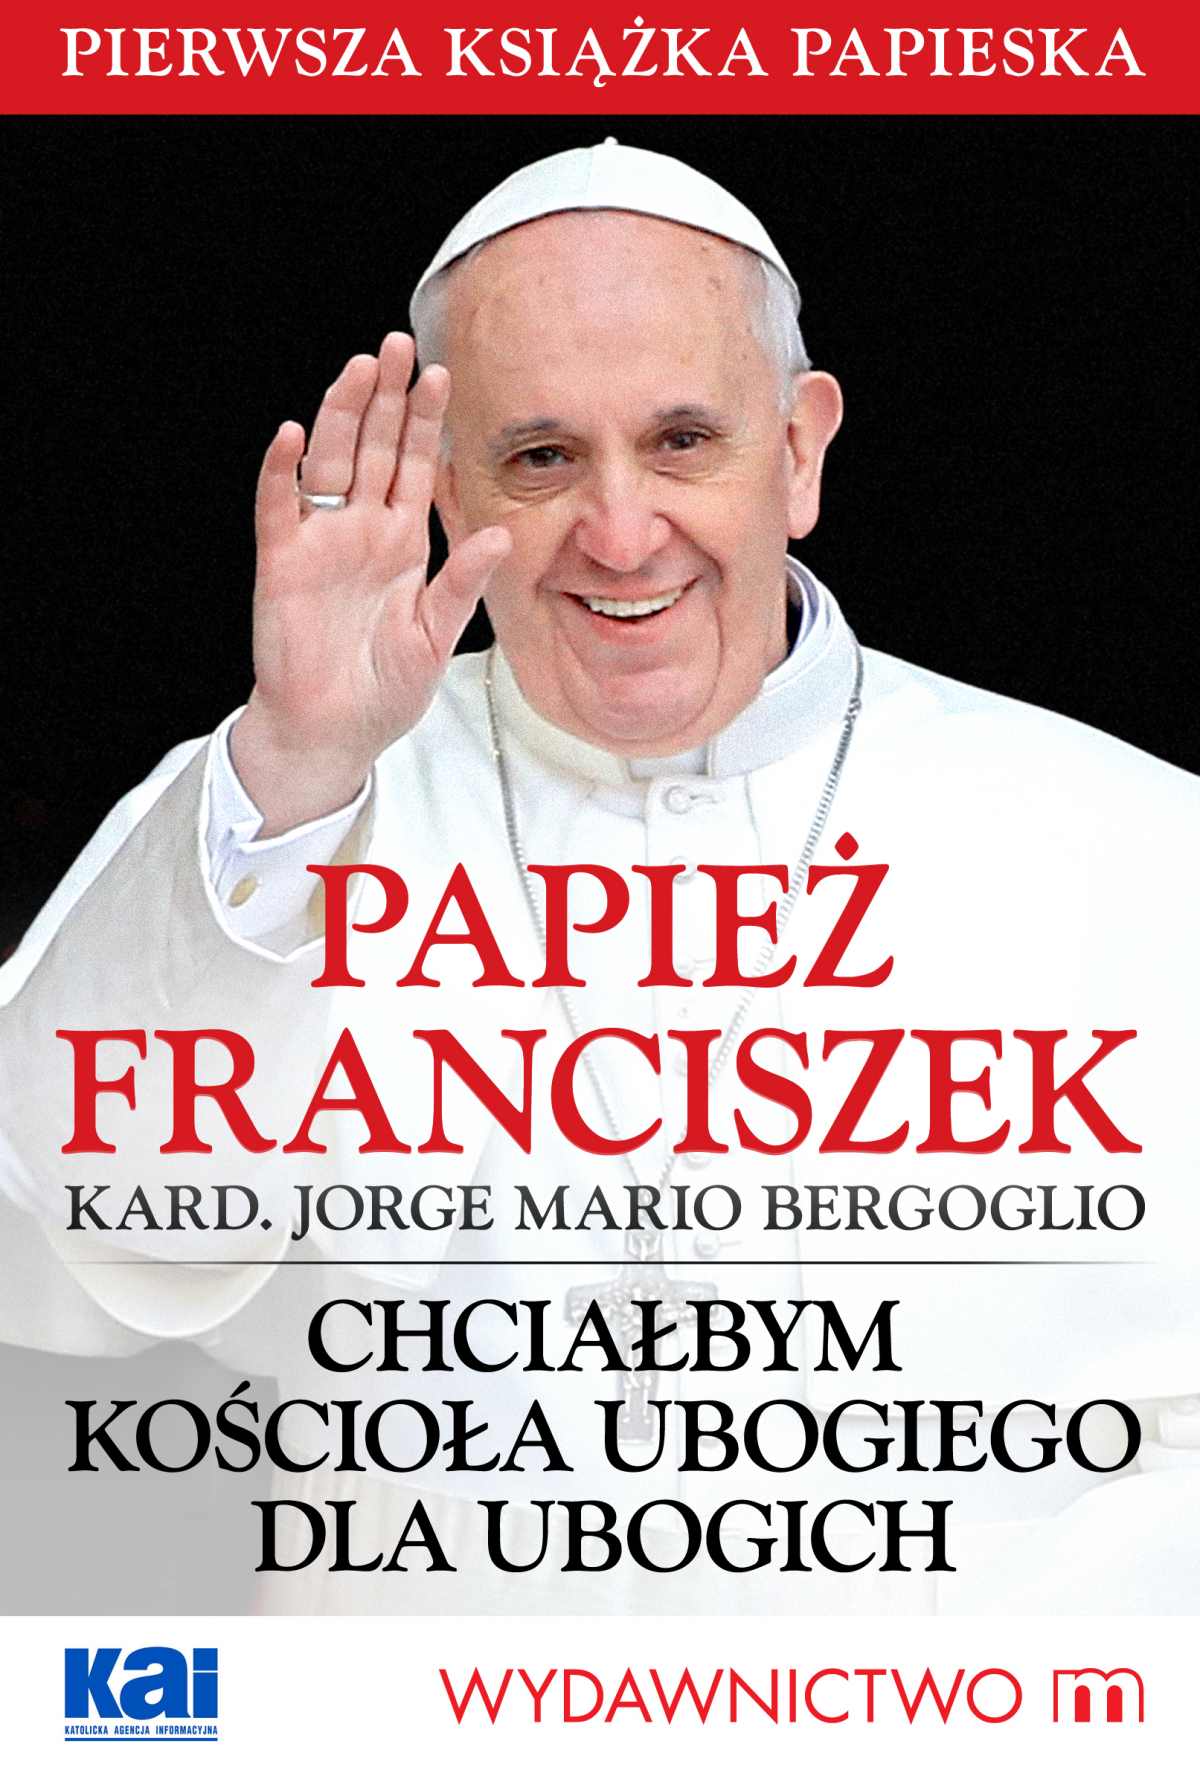 Okładka:Papież Franciszek - Chciałbym Kościoła ubogiego dla ubogich 